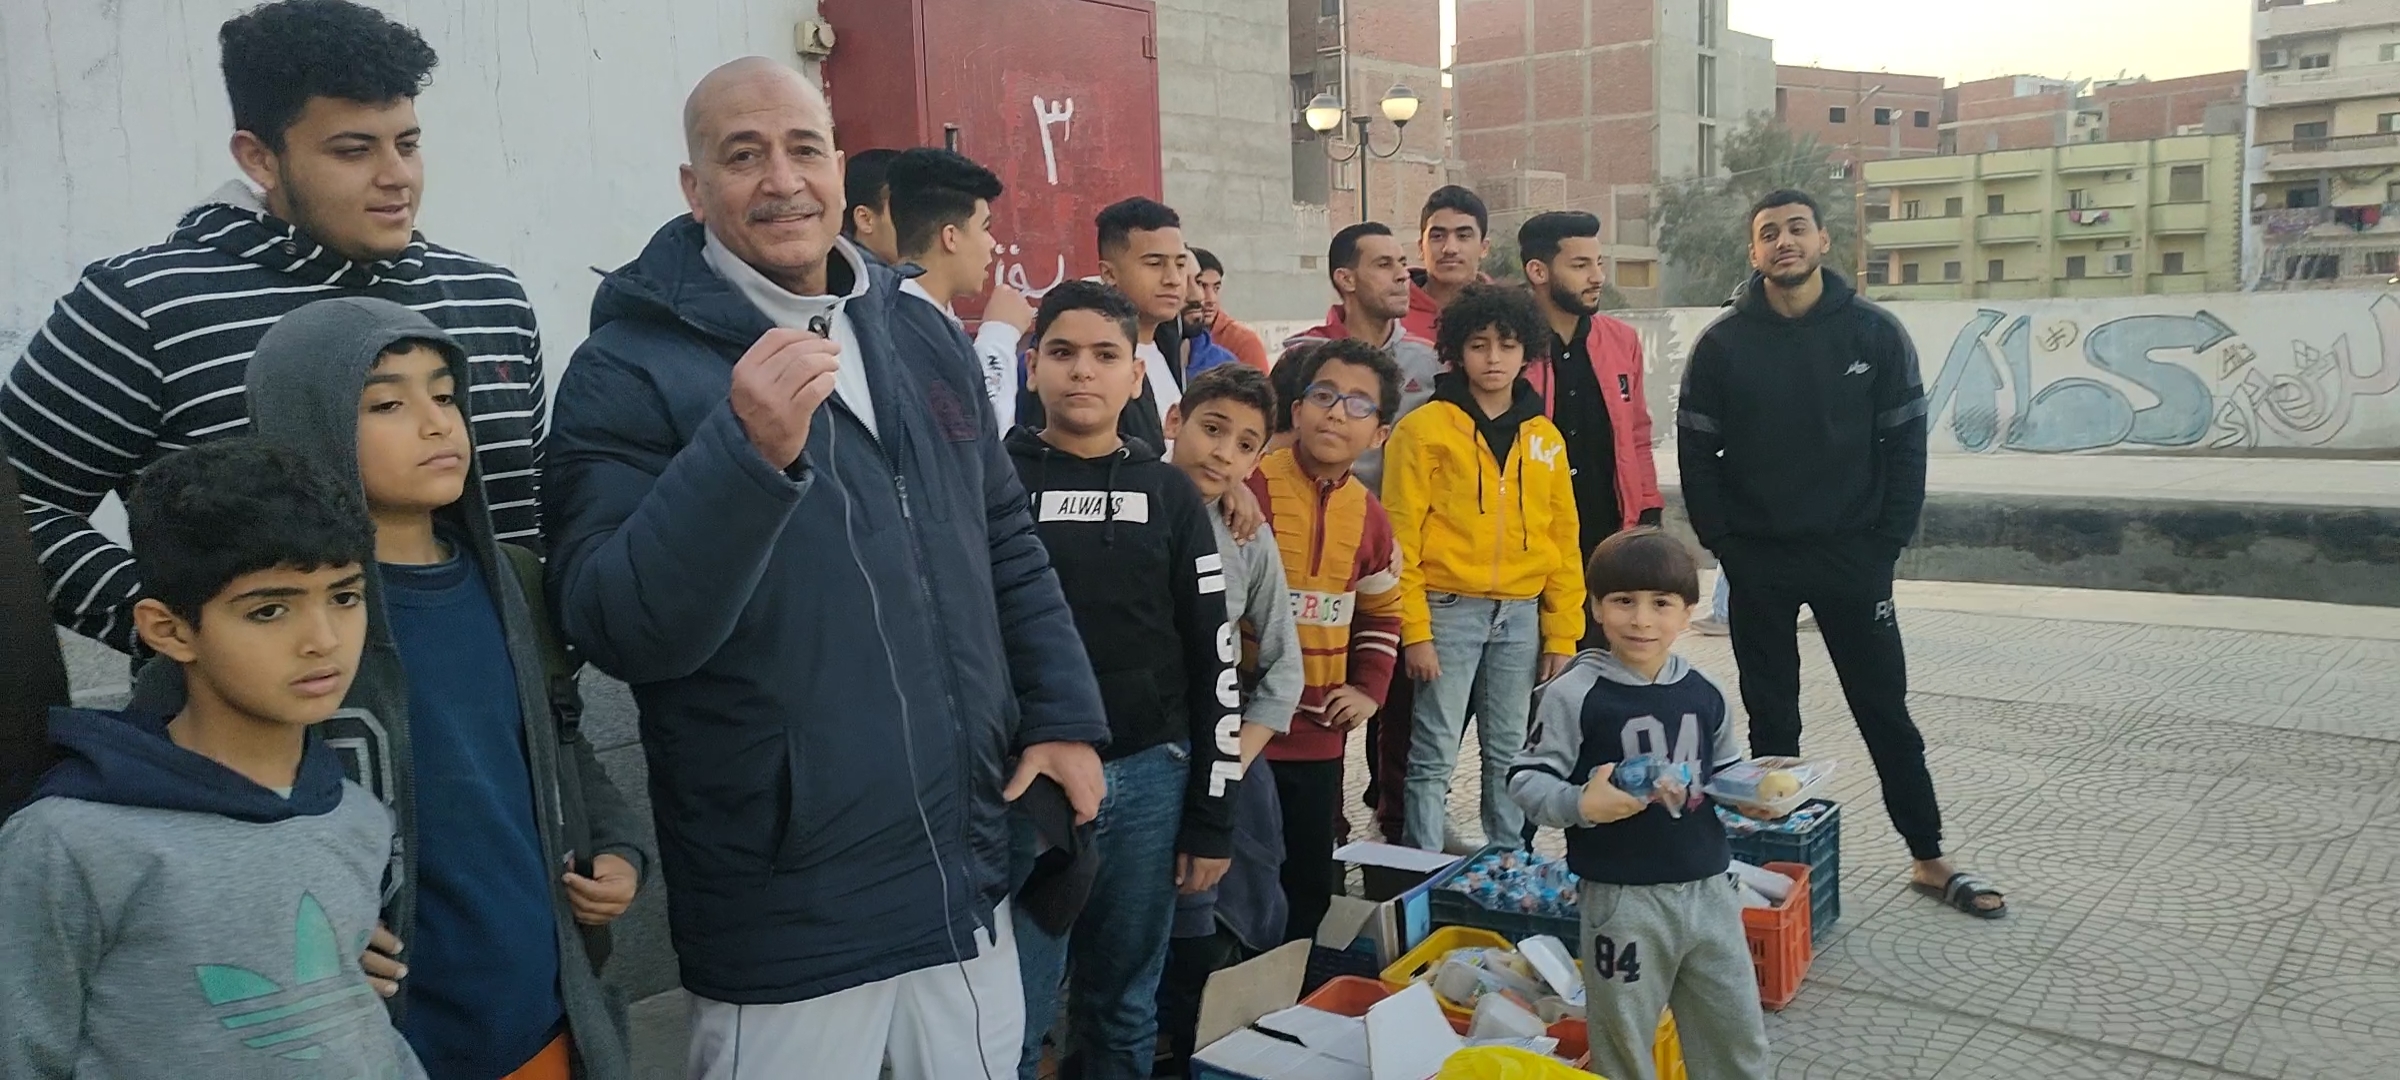 شباب أبوحماد يقدمون الأفطار لركاب القطار (3)